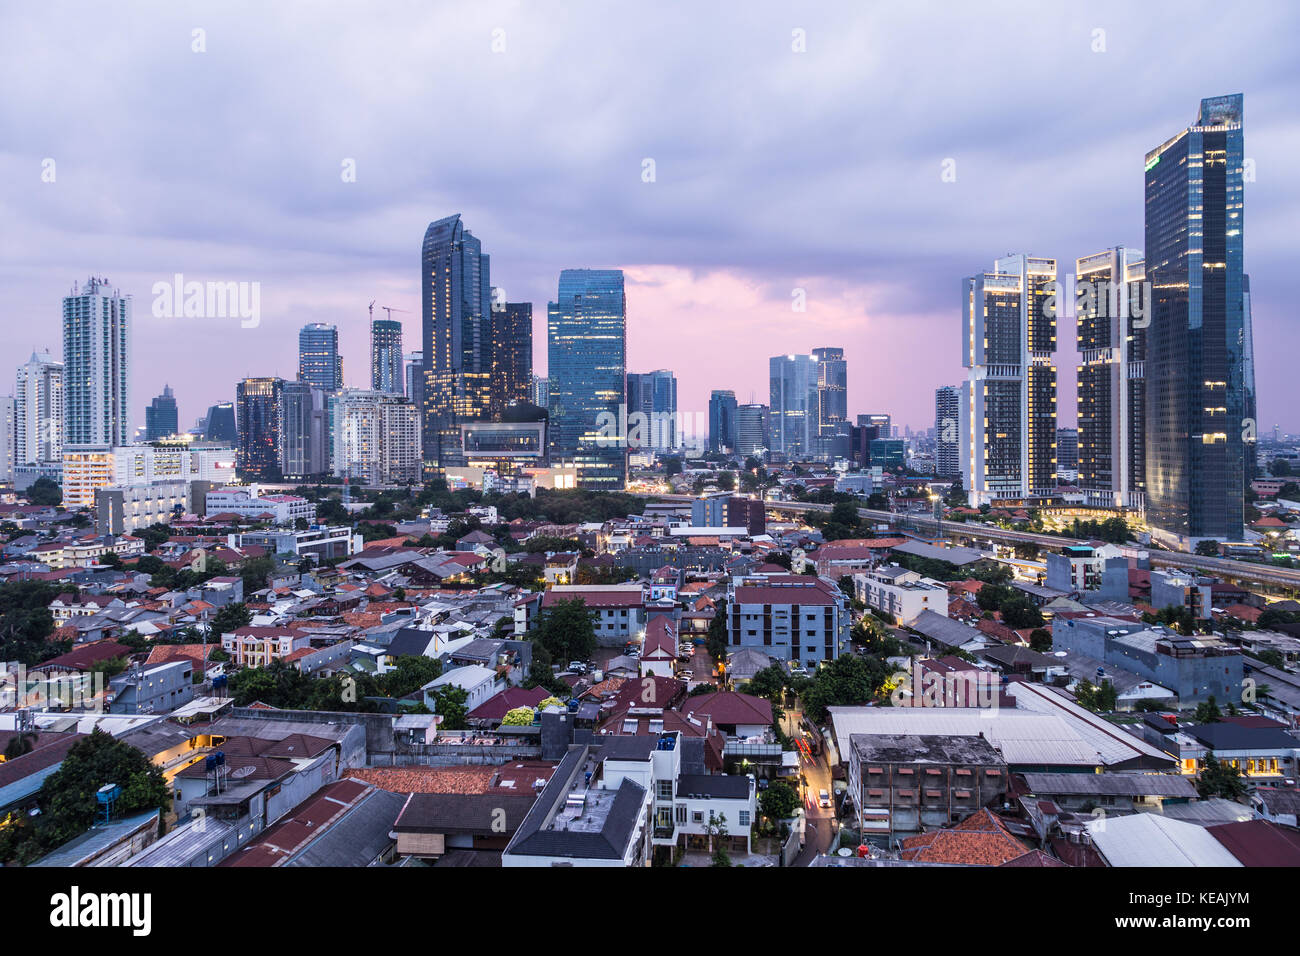 Sonnenuntergang über Jakarta Geschäftsgebiets mit hohen Bürogebäuden und Luxury Condominium Tower in Indonesien Hauptstadt. Stockfoto